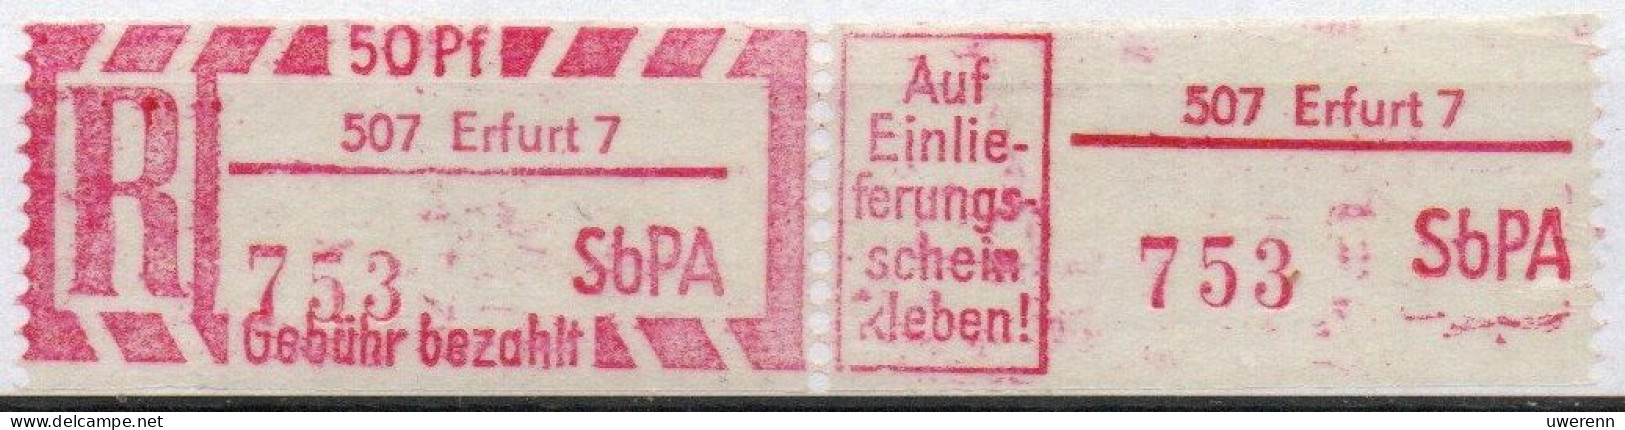 DDR Einschreibemarke Erfurt SbPA Postfrisch, EM2B-507-7II RU (a) Zh (Mi 2C) - Labels For Registered Mail